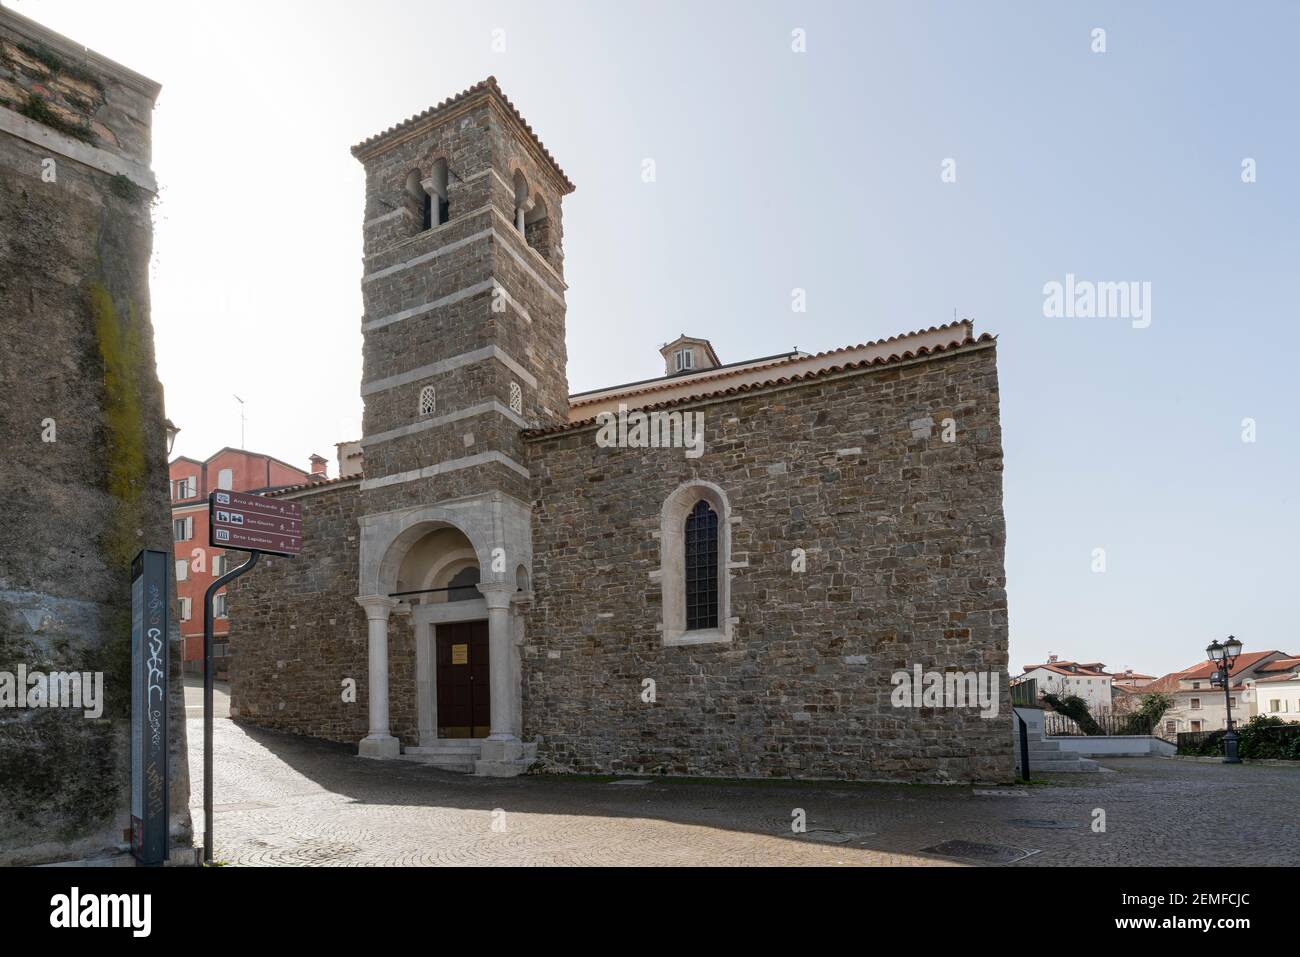 Trieste, Italia. 24 febbraio 2021. La vista esterna della basilica di San Silvestro nel centro della città Foto Stock